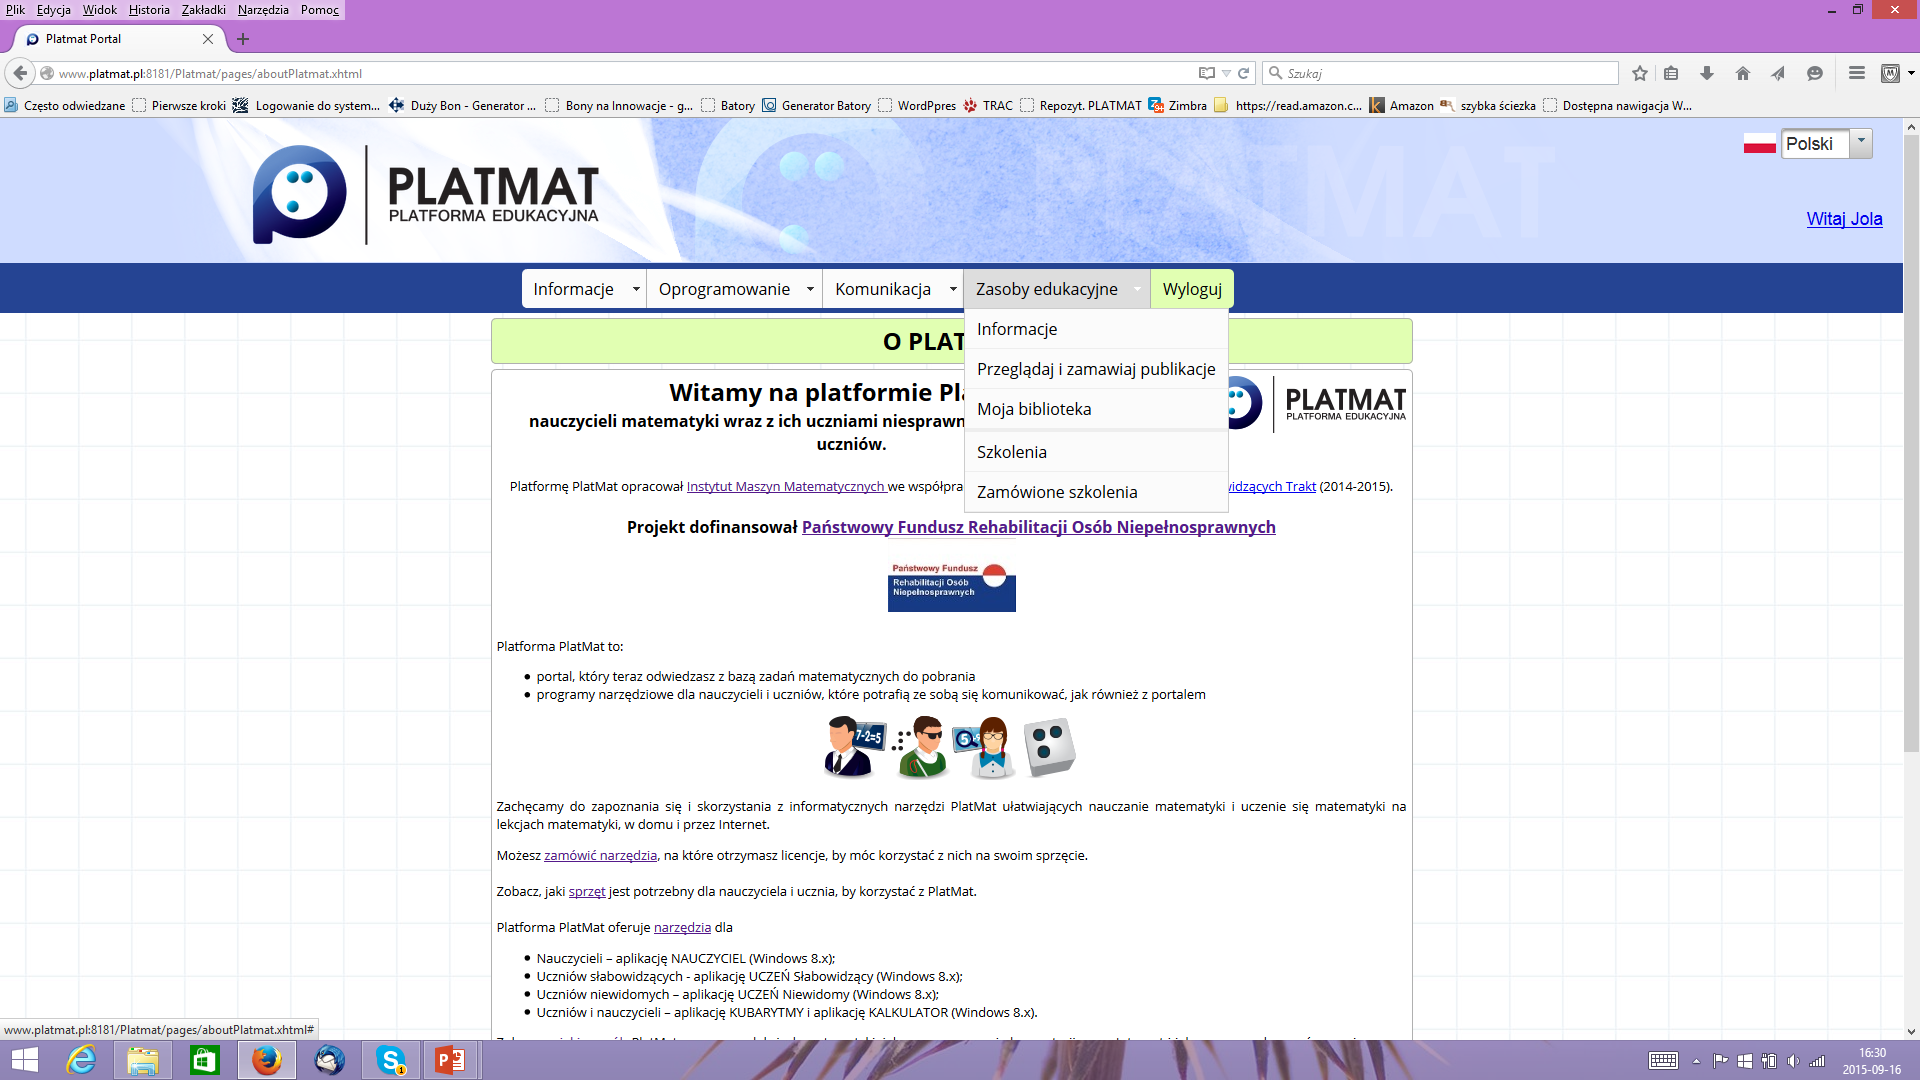 Portal: www.platmat.